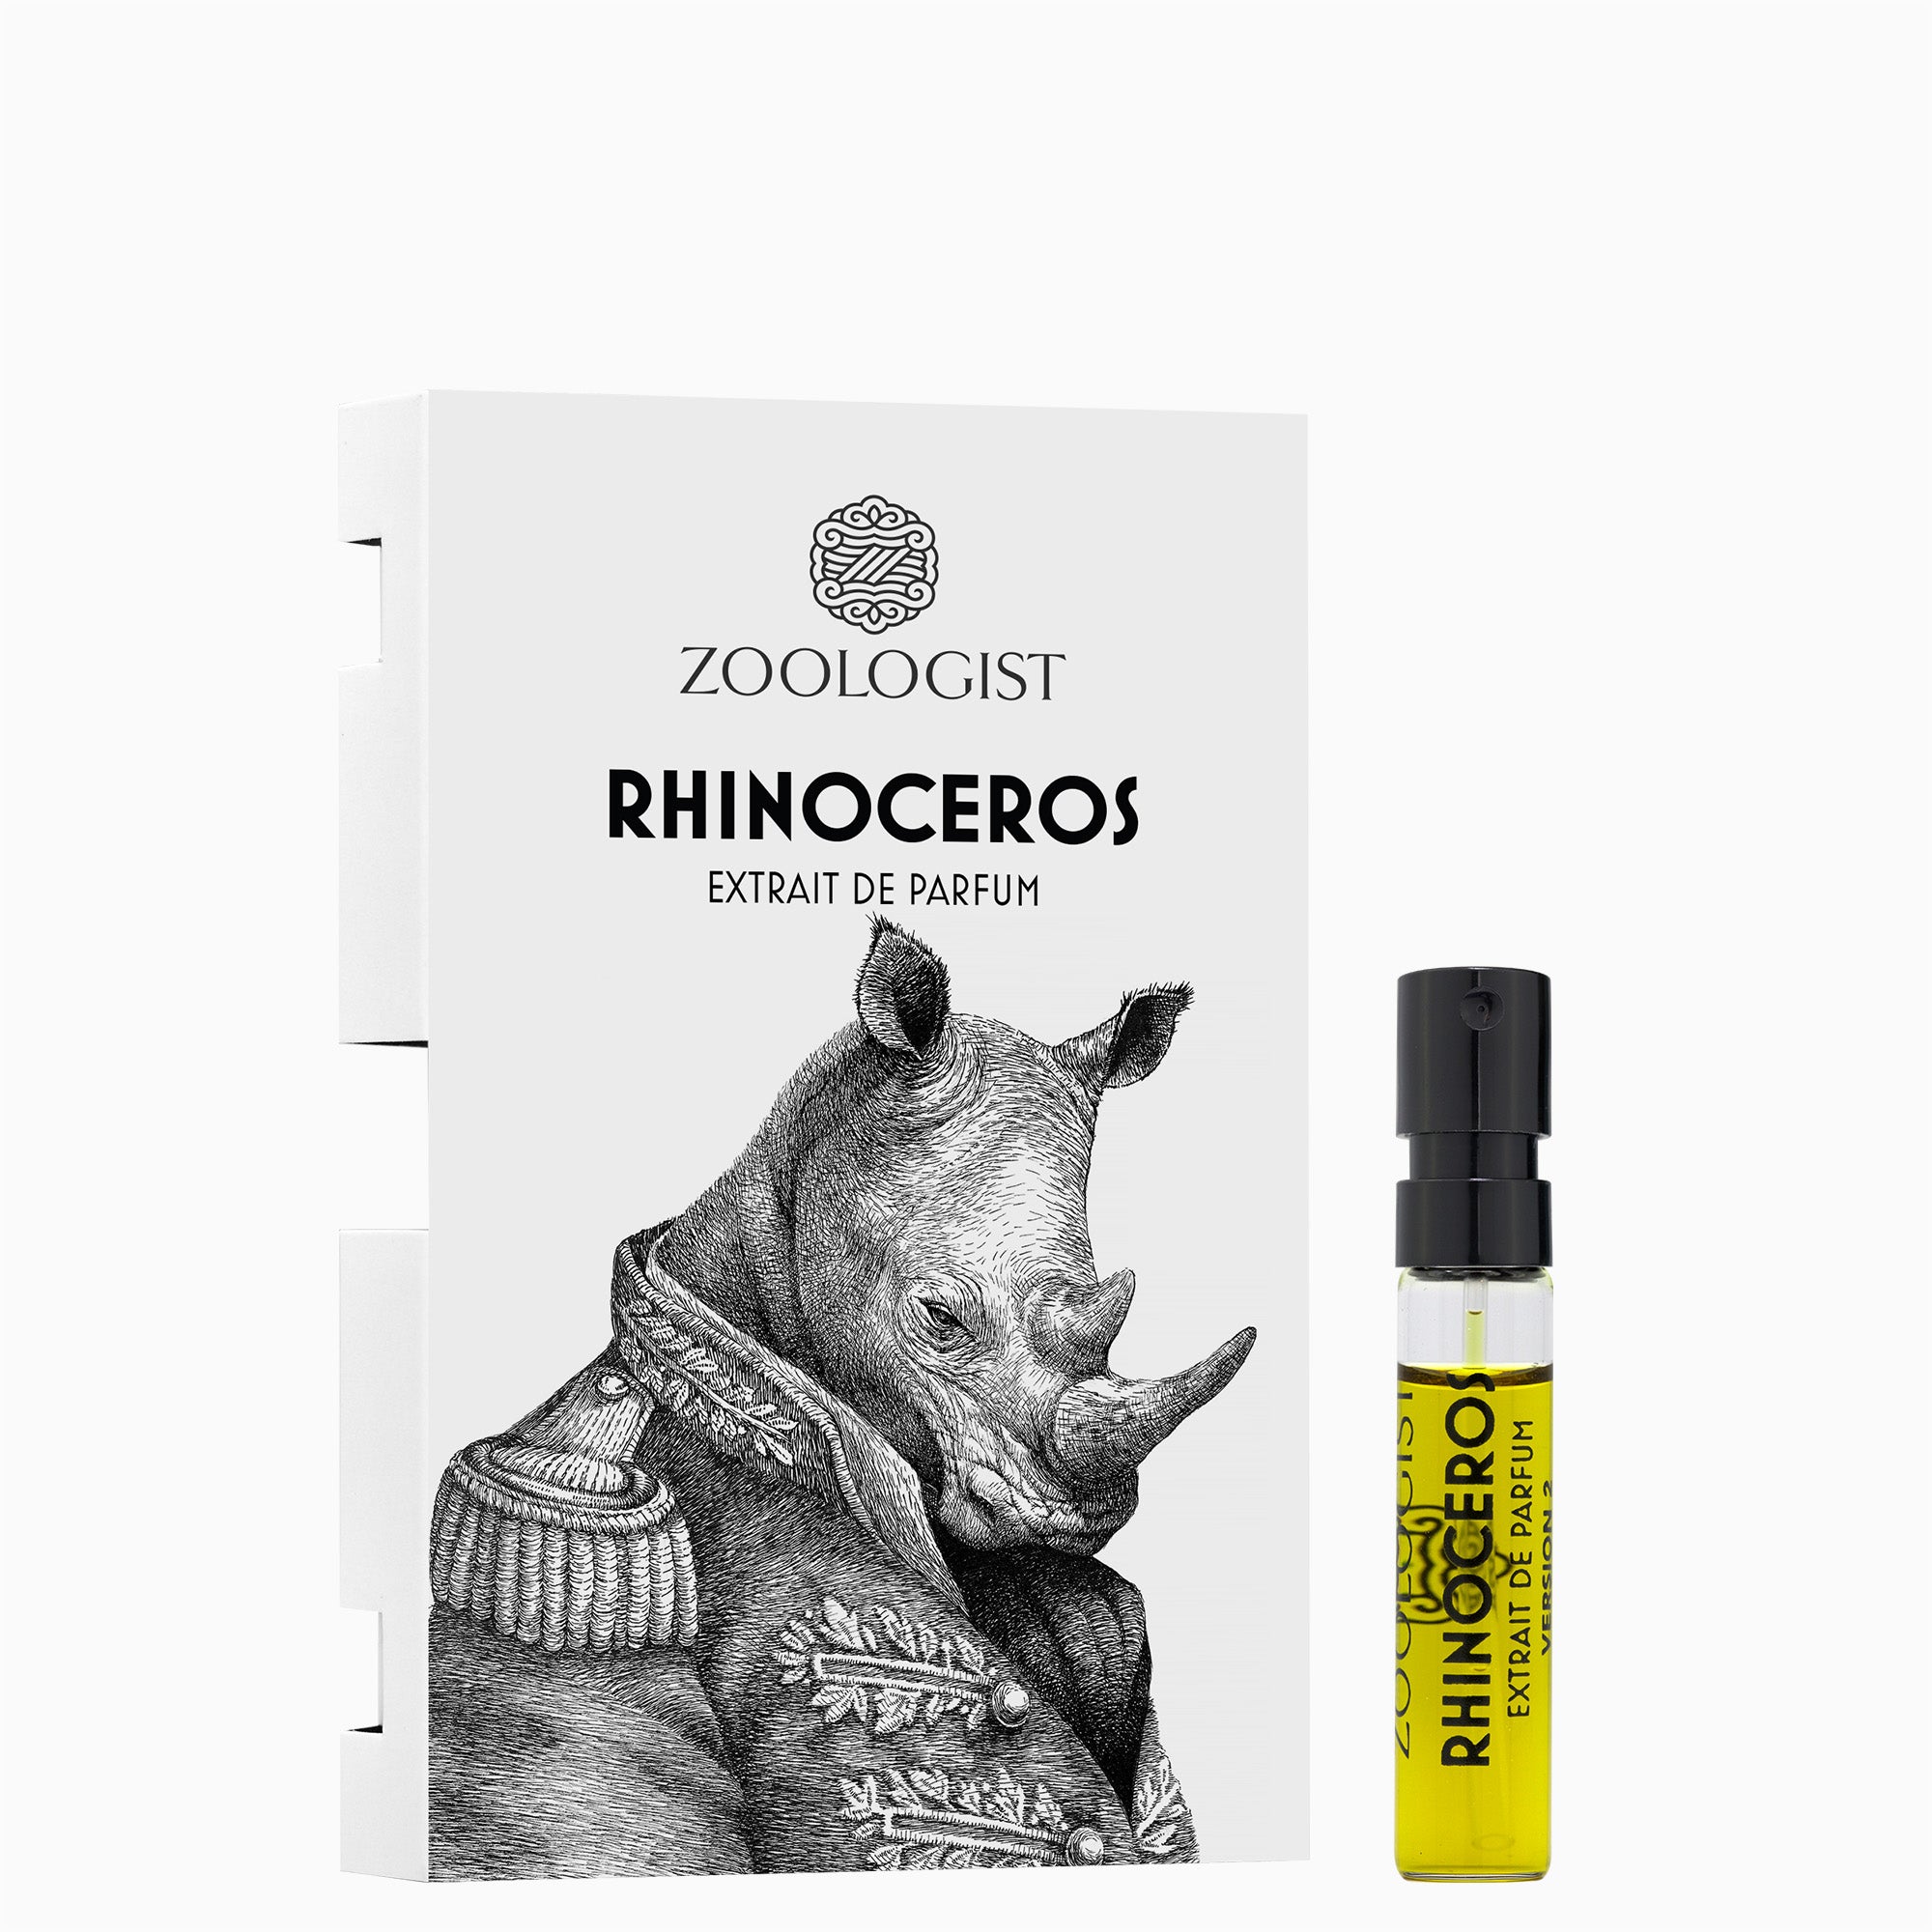 Zoologist Rhinoceros (2020) Sample